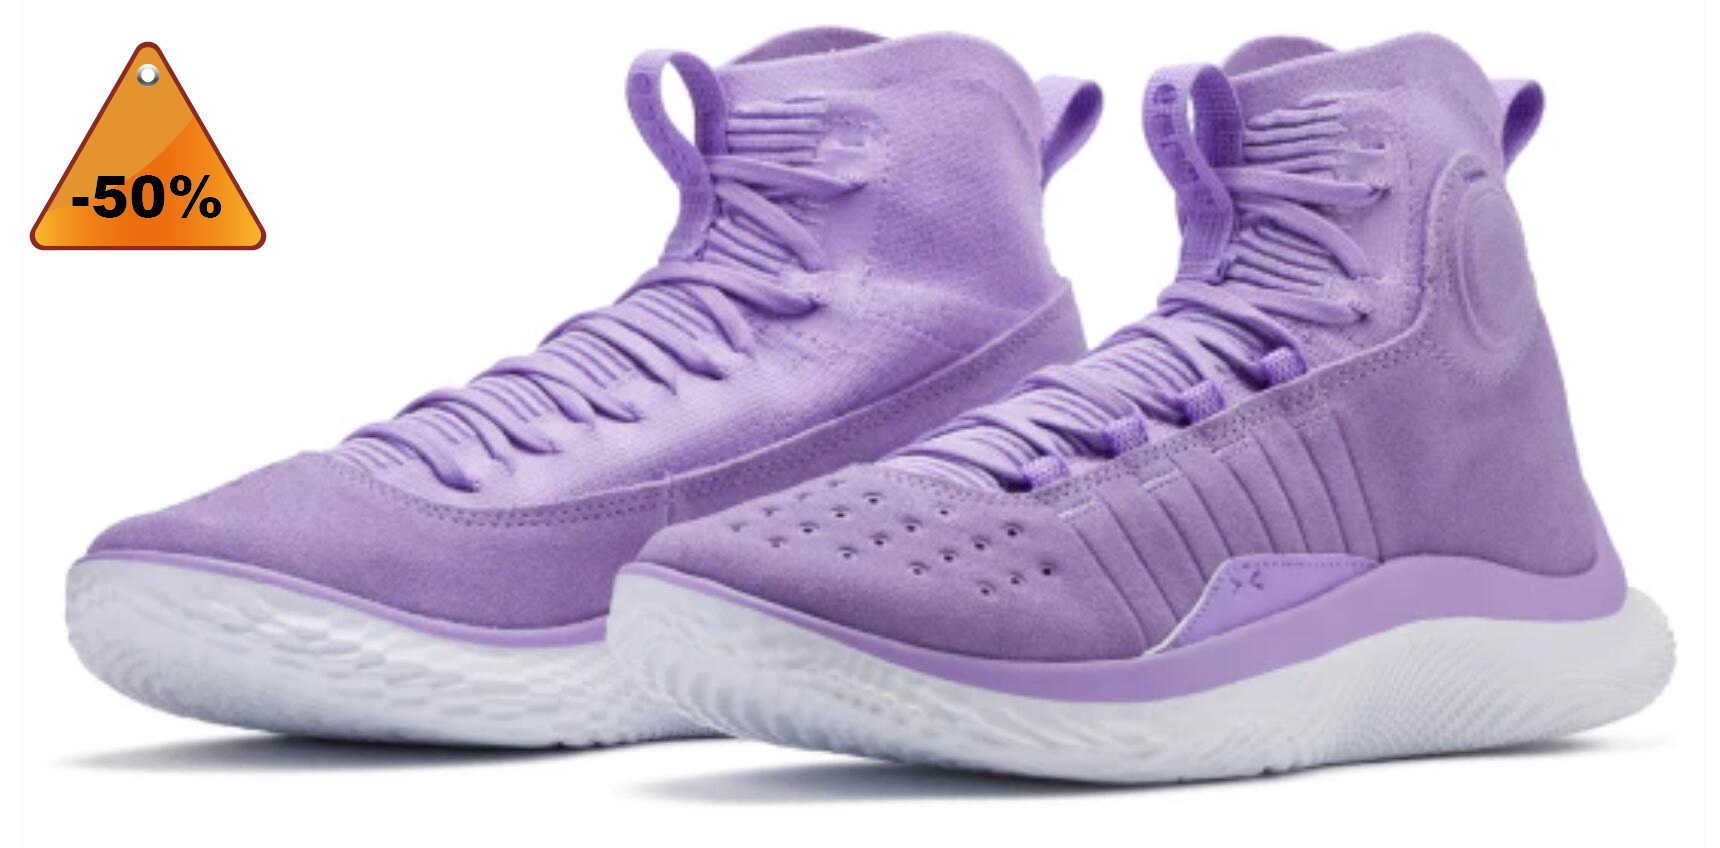 

LOW shoes Purple Stephen Currys 4 Flotro champion Vivid Lilac men women Basketball Shoes for sale Sport Shoe Trainner Sneakers US5-US12